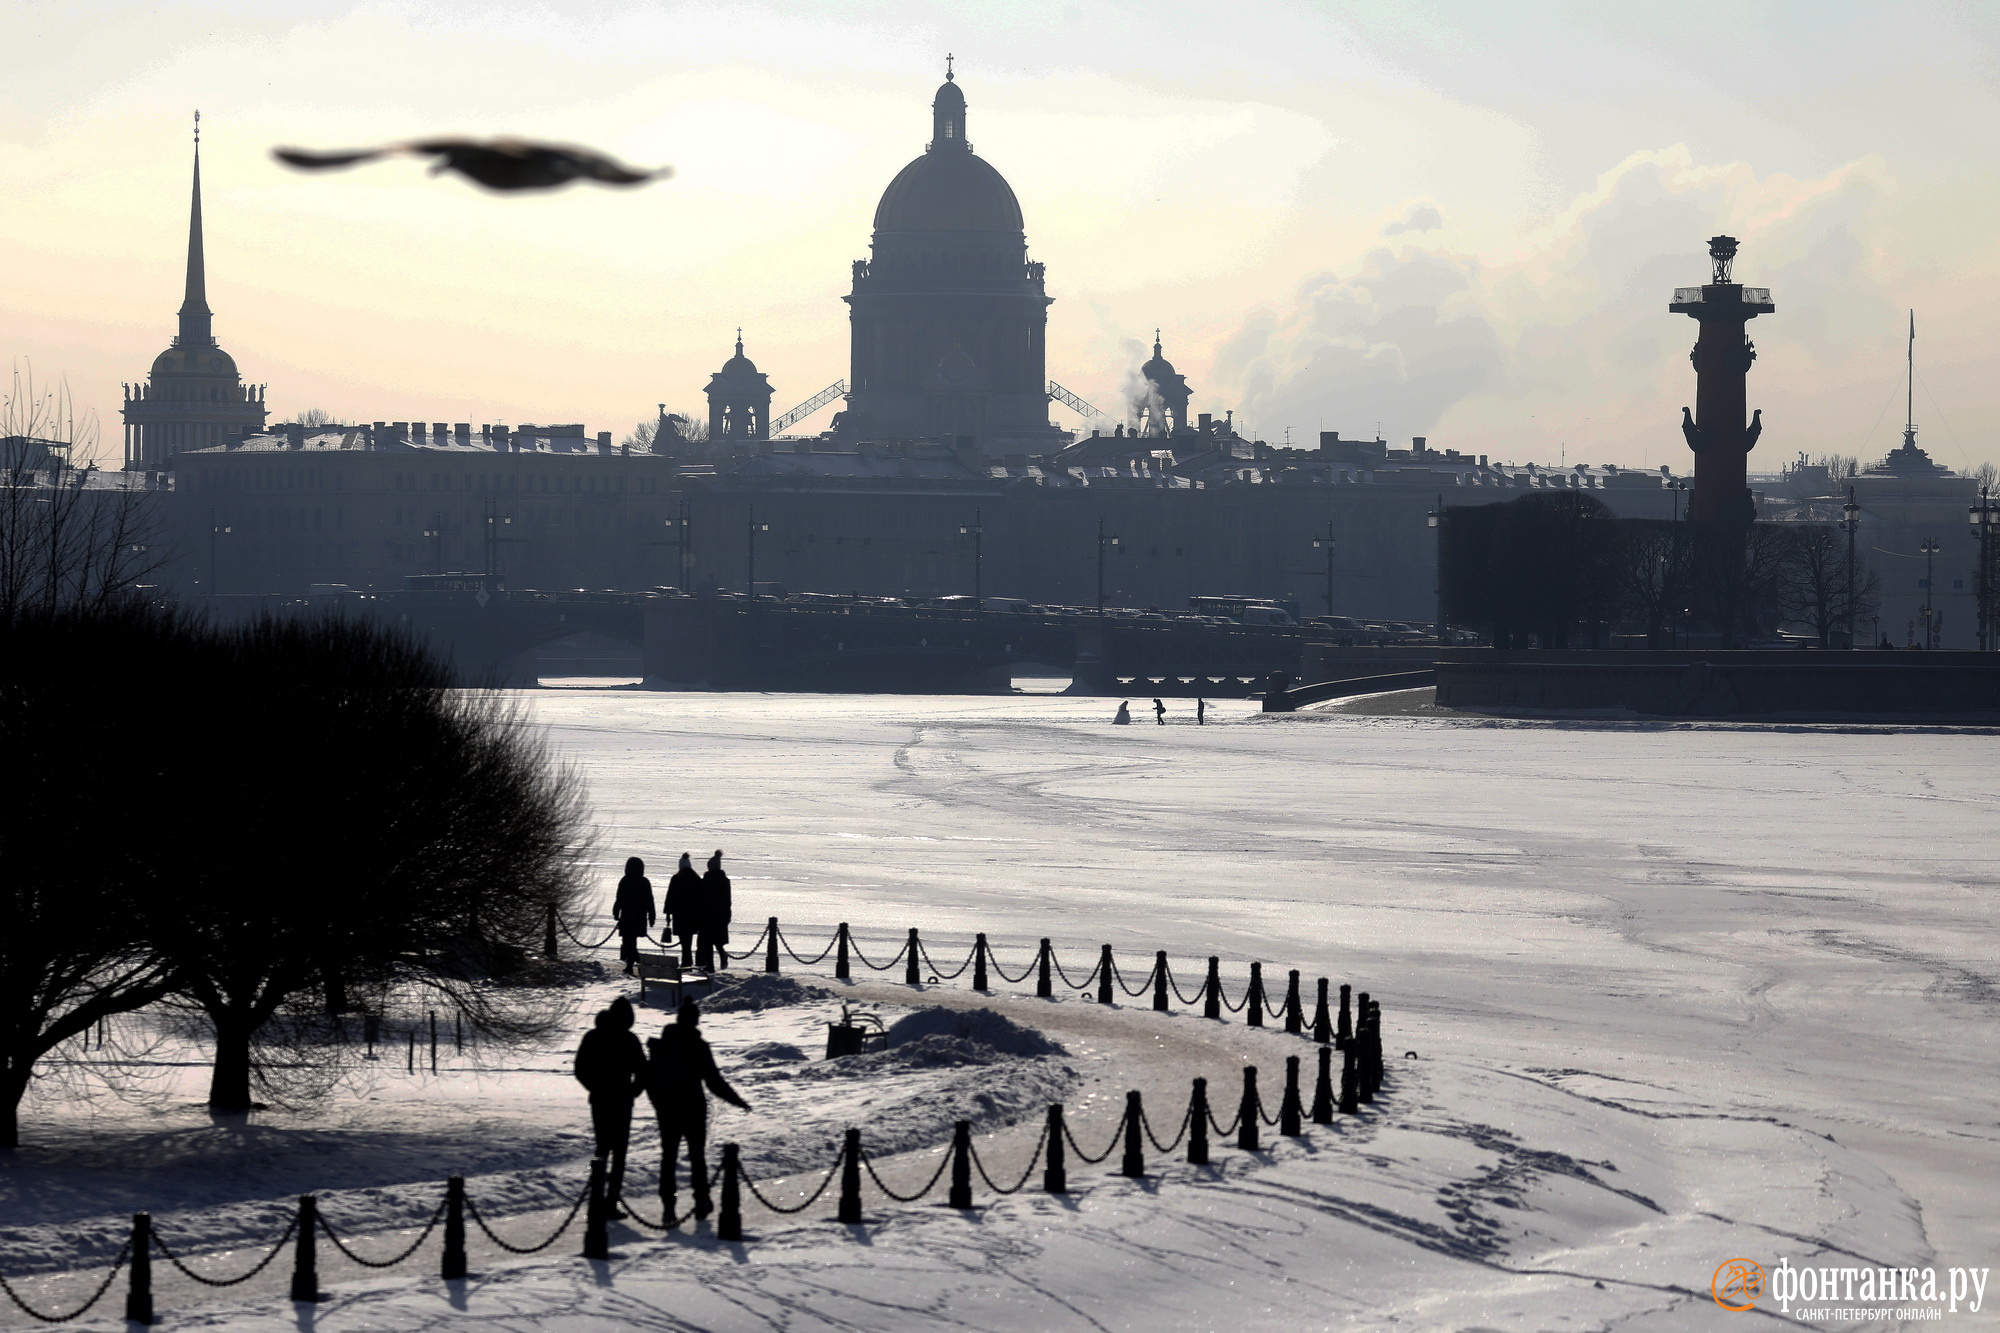 Пережили. Месяц оттепели и пара дней солнца: посмотрите, каким был Петербург этой зимой